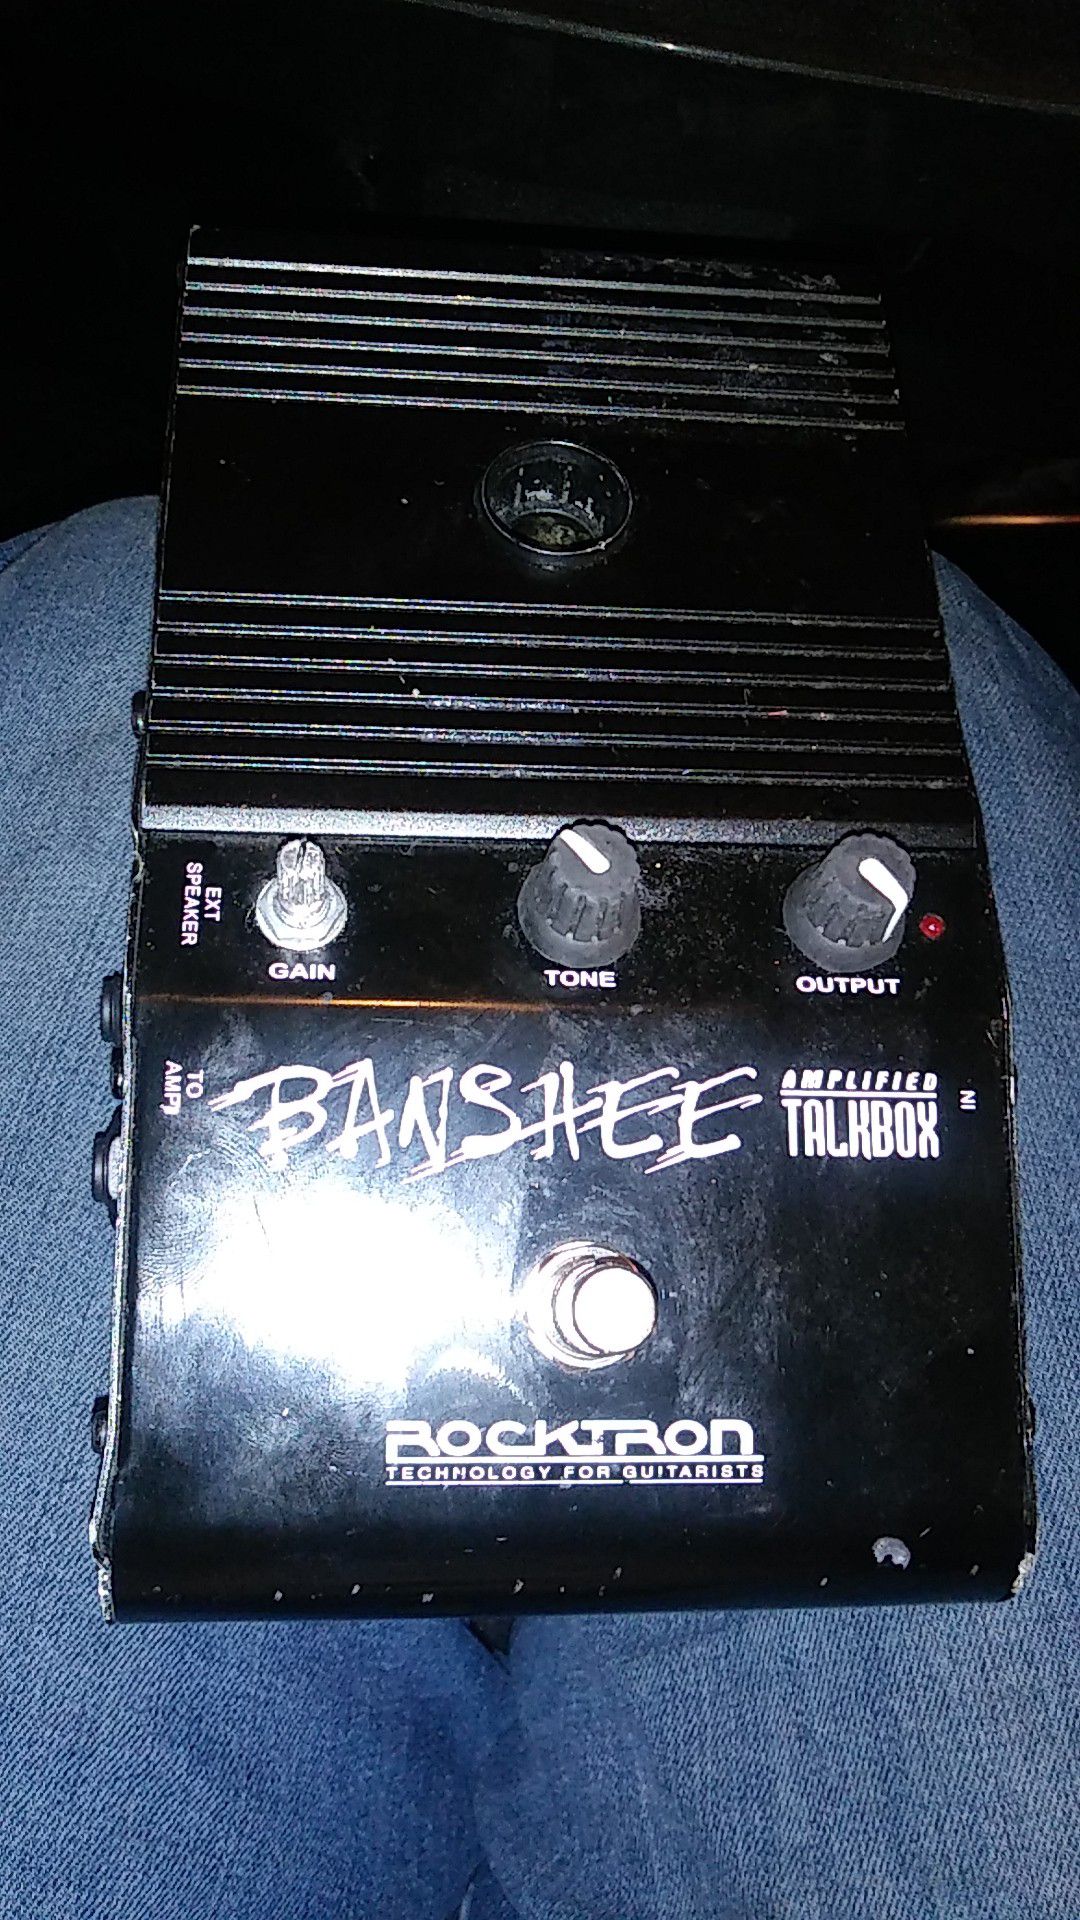 Banshee amplifier talkbox